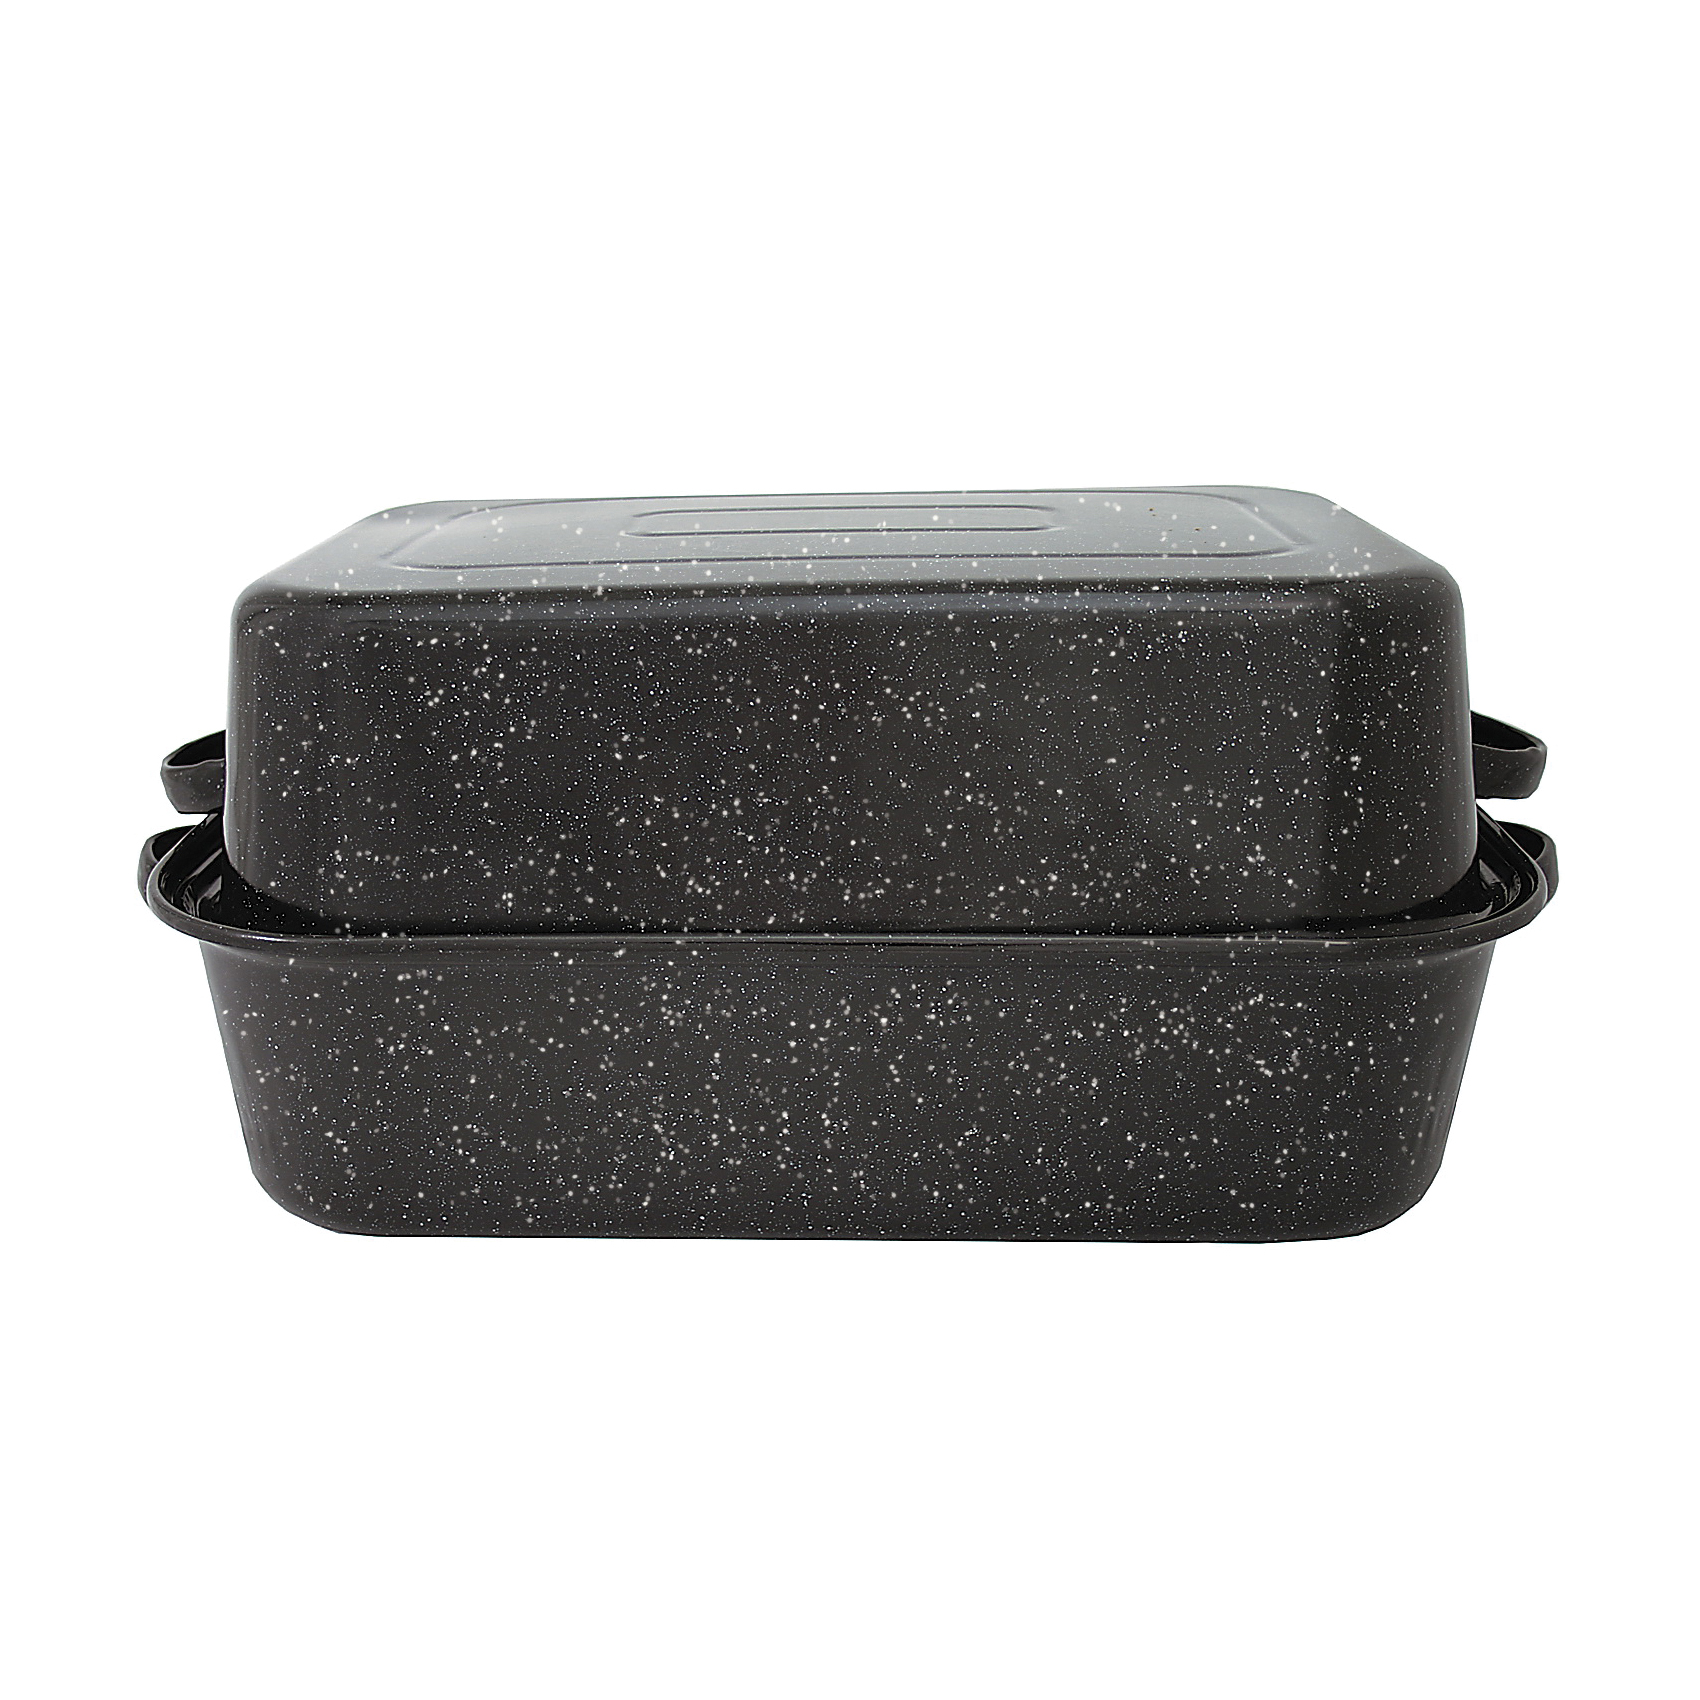 Granite Ware F0511-3 Roaster, 25 lb Capacity, Porcelain/Steel, Black, Dark Enamel, 21-1/4 in L, 14 in W - 1